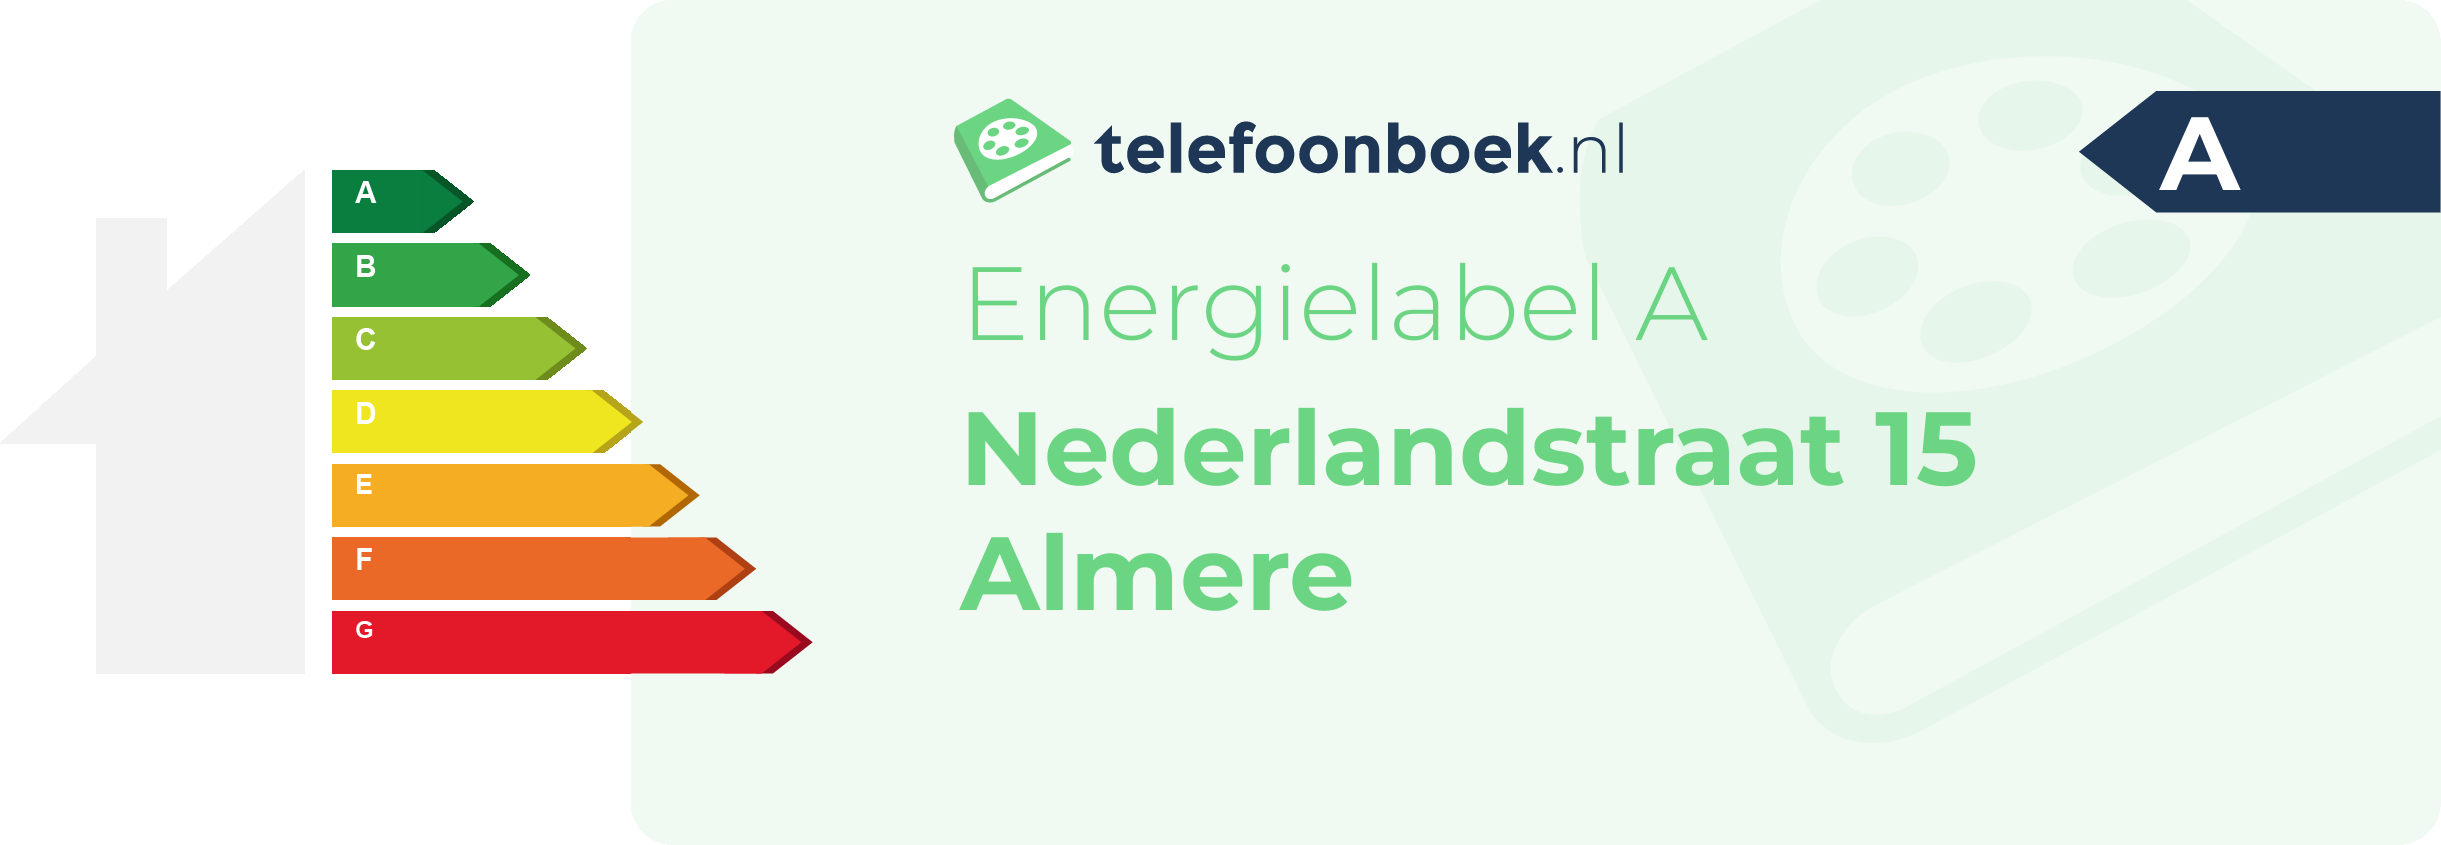 Energielabel Nederlandstraat 15 Almere